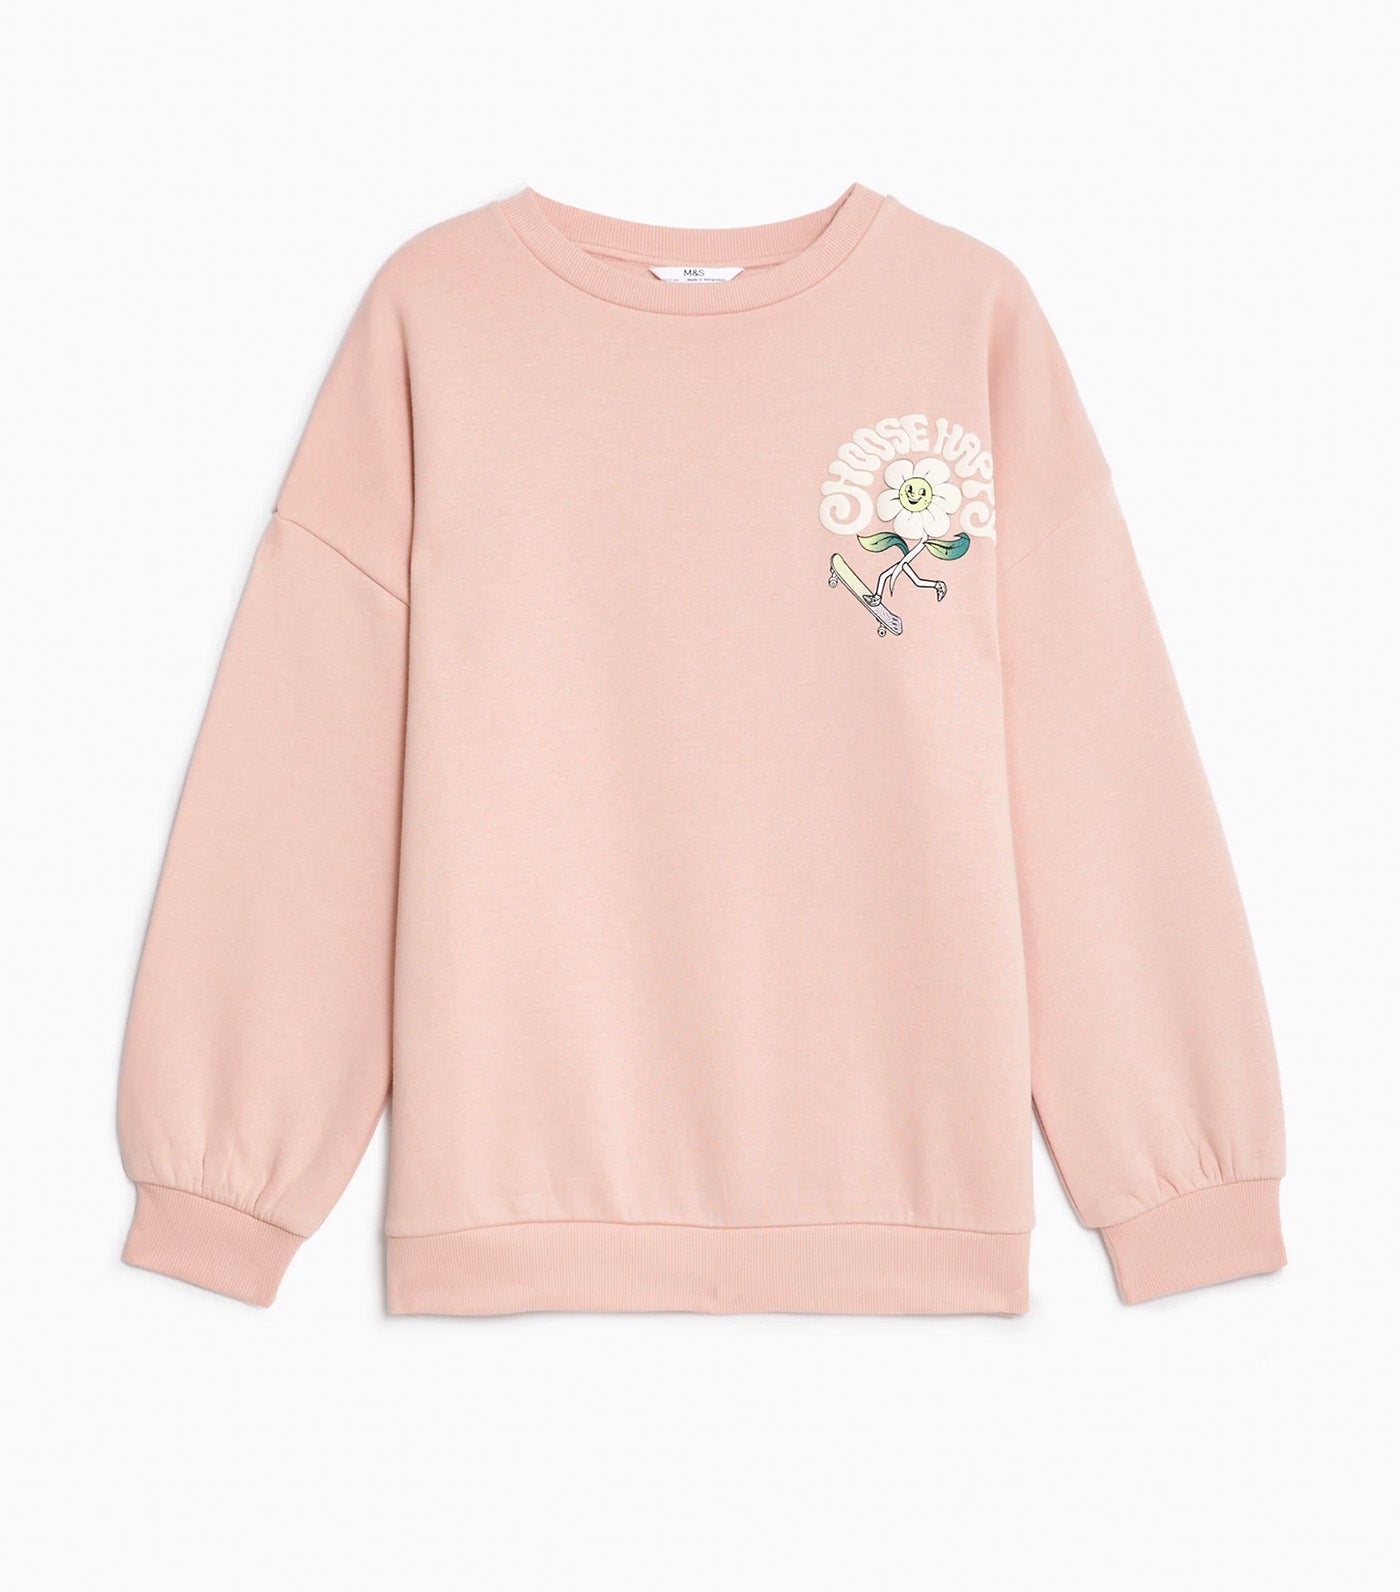 Cotton Rich Graphic Sweatshirt